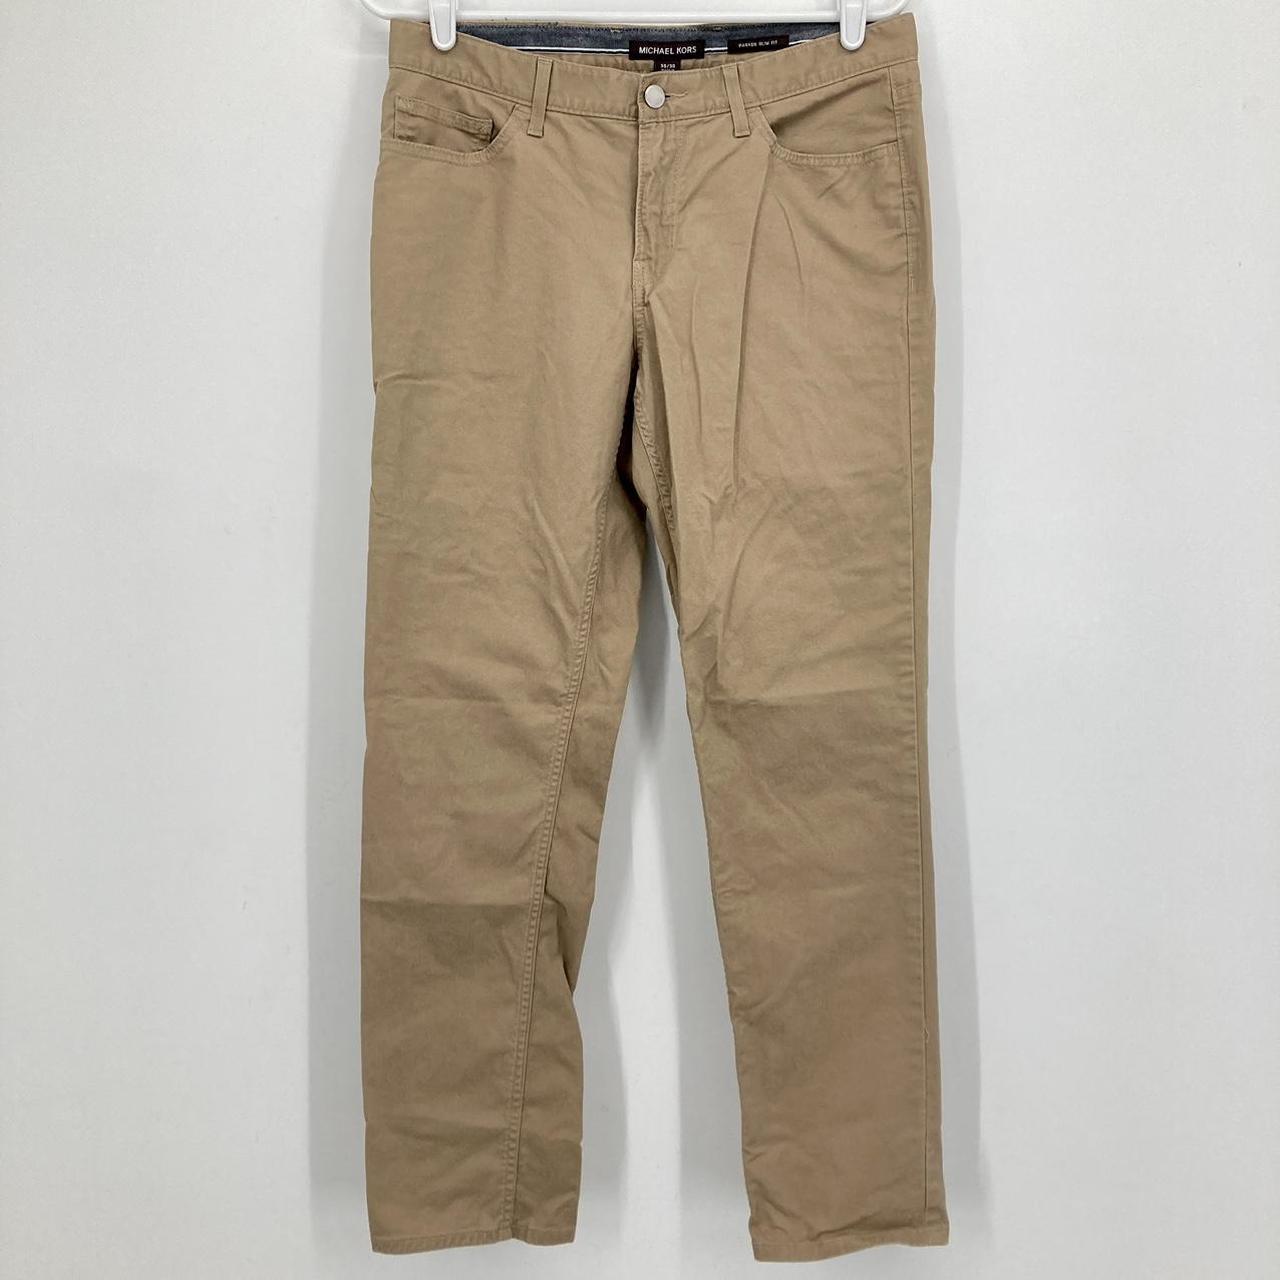 Michael Kors Men's Tan Trousers | Depop